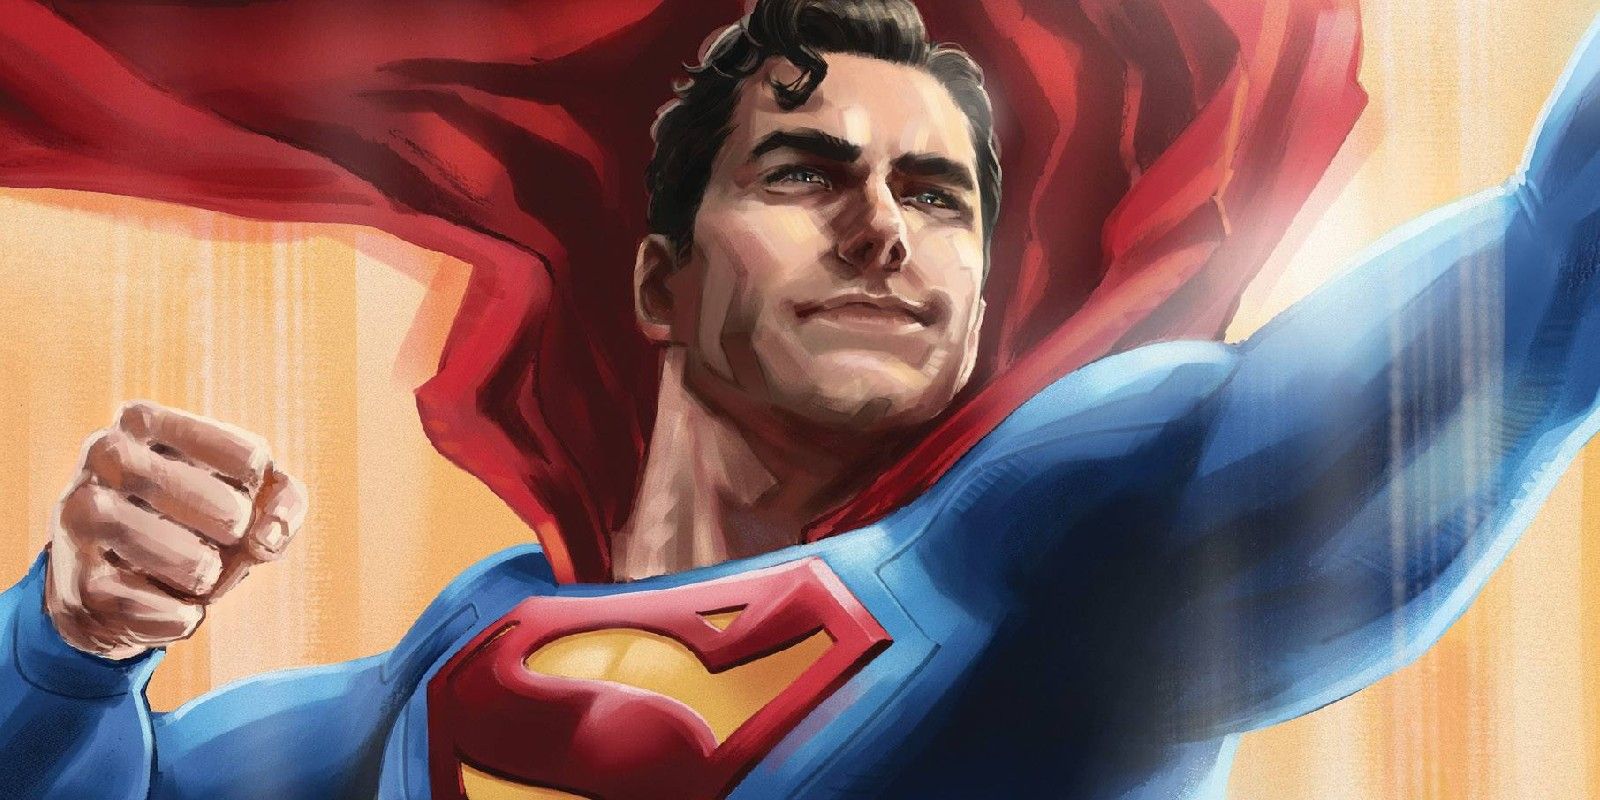 “El primer Superman”: incluso Clark Kent admite que otro héroe se ganó el nombre de “Superman” antes que él